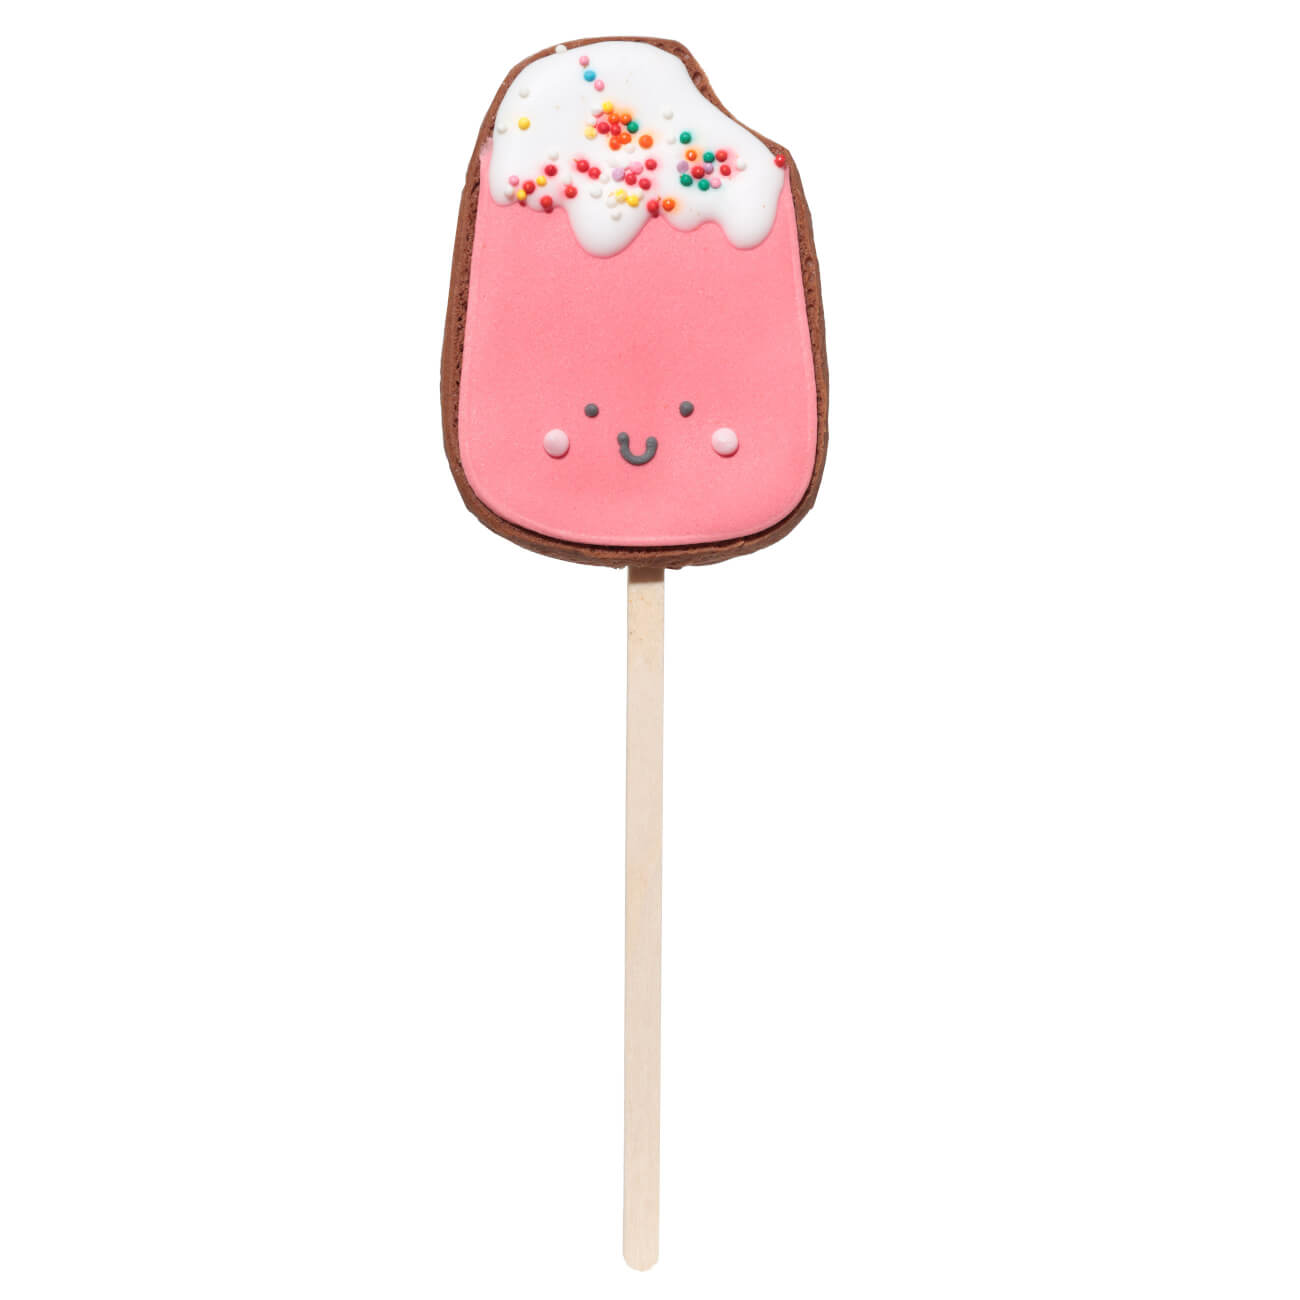 Пряник, 40 гр, глазированный, шоколадный, на палочке, розовый, Мороженое, Prani yoriki комбинезон для собак пряник мальчик размер м